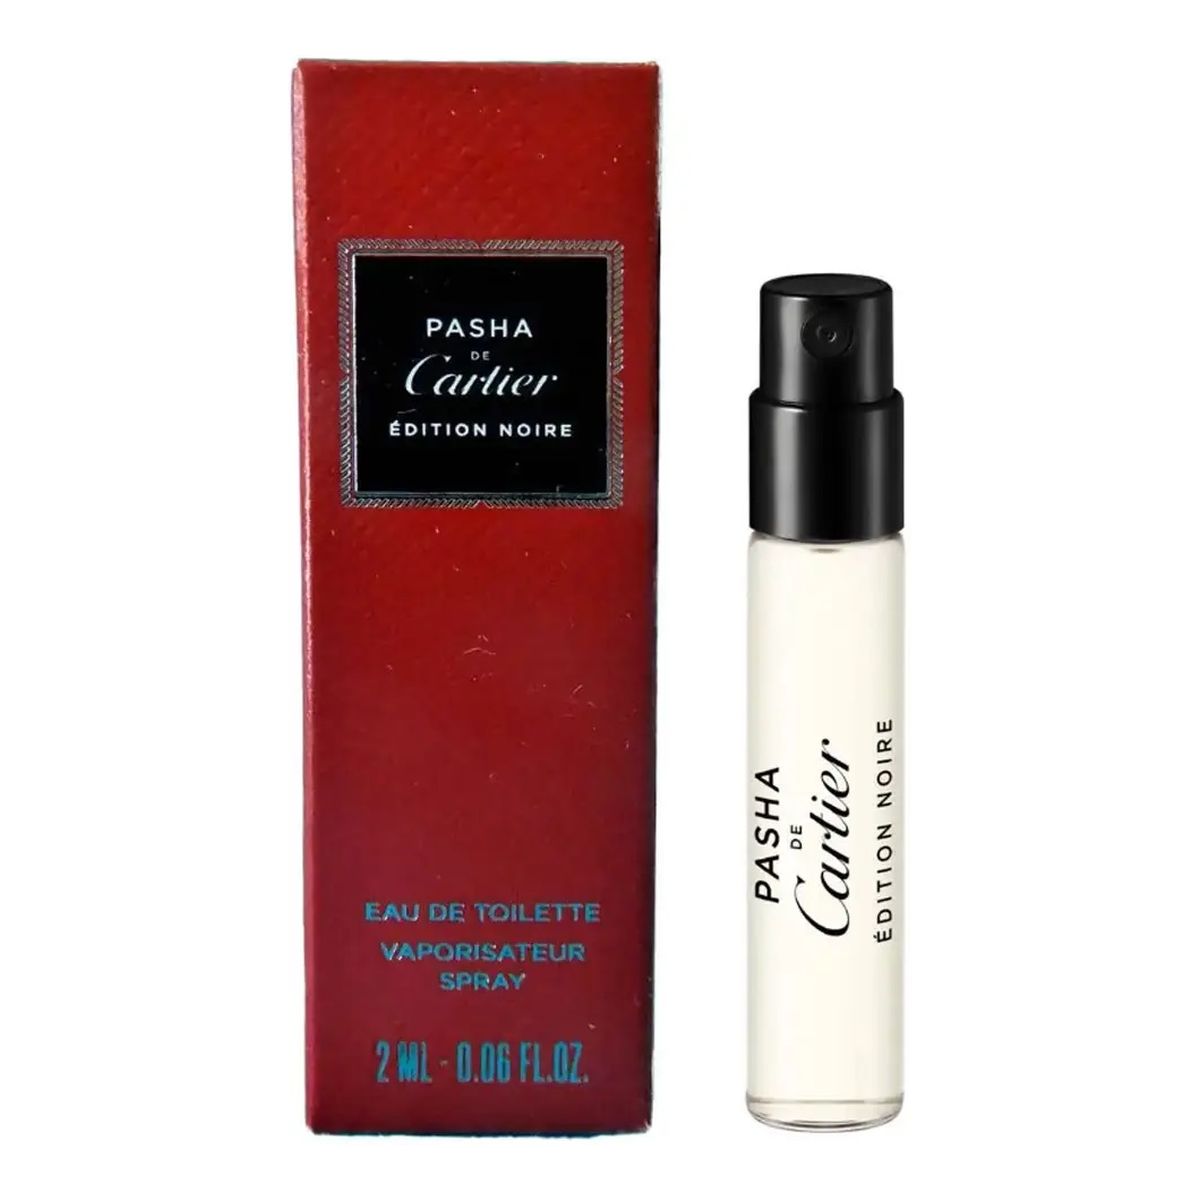 Cartier Pasha de Cartier Edition Noire Woda toaletowa spray próbka 2ml